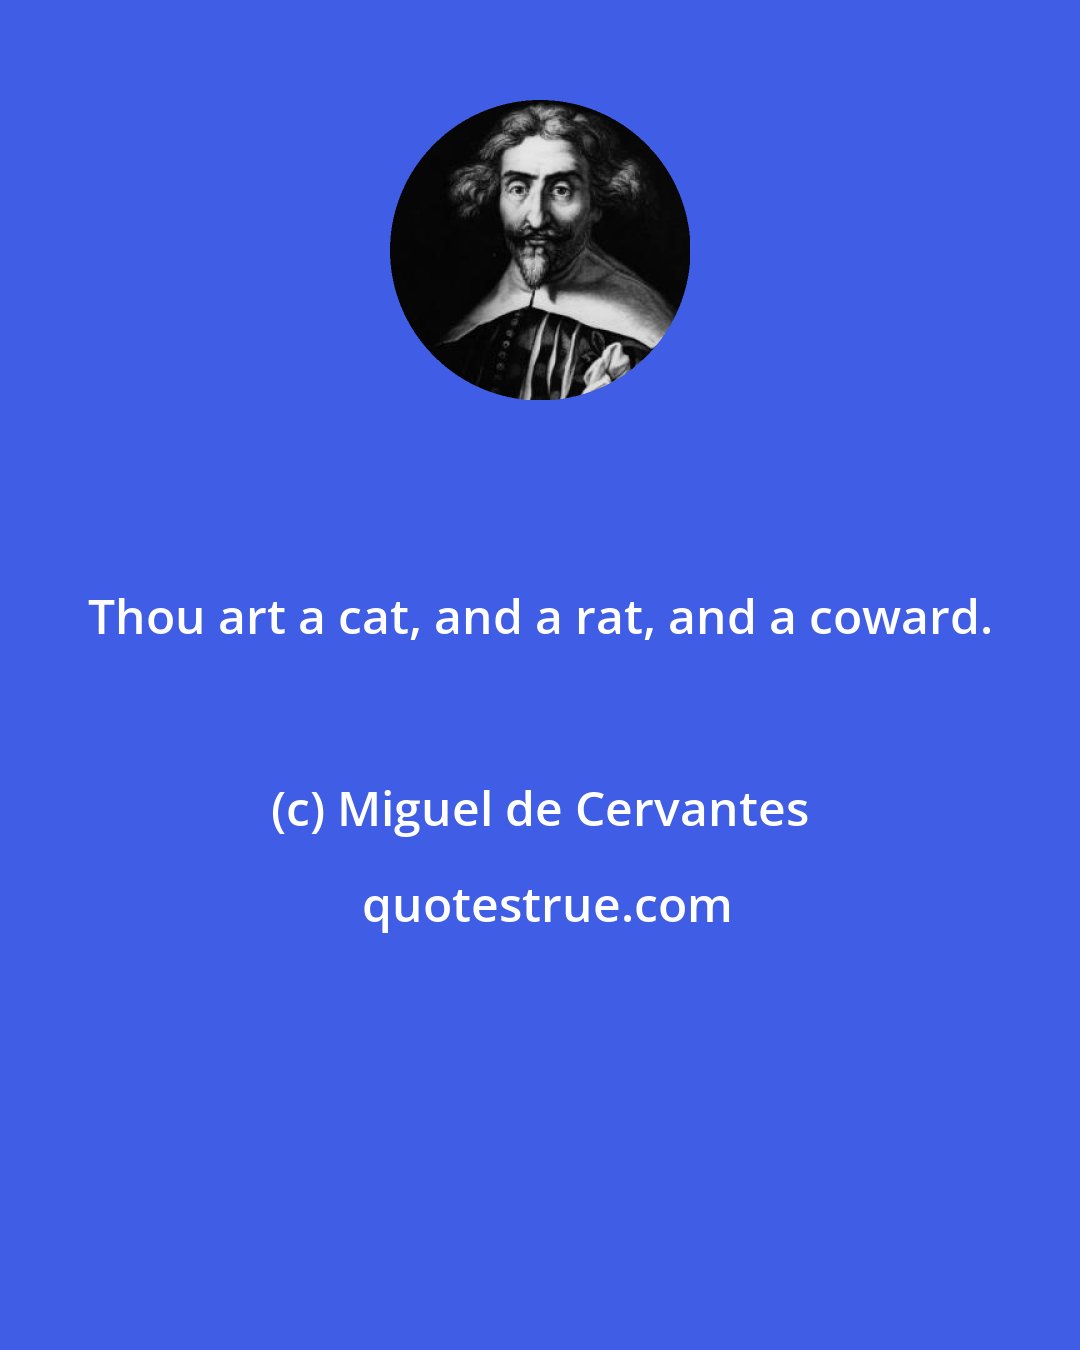 Miguel de Cervantes: Thou art a cat, and a rat, and a coward.